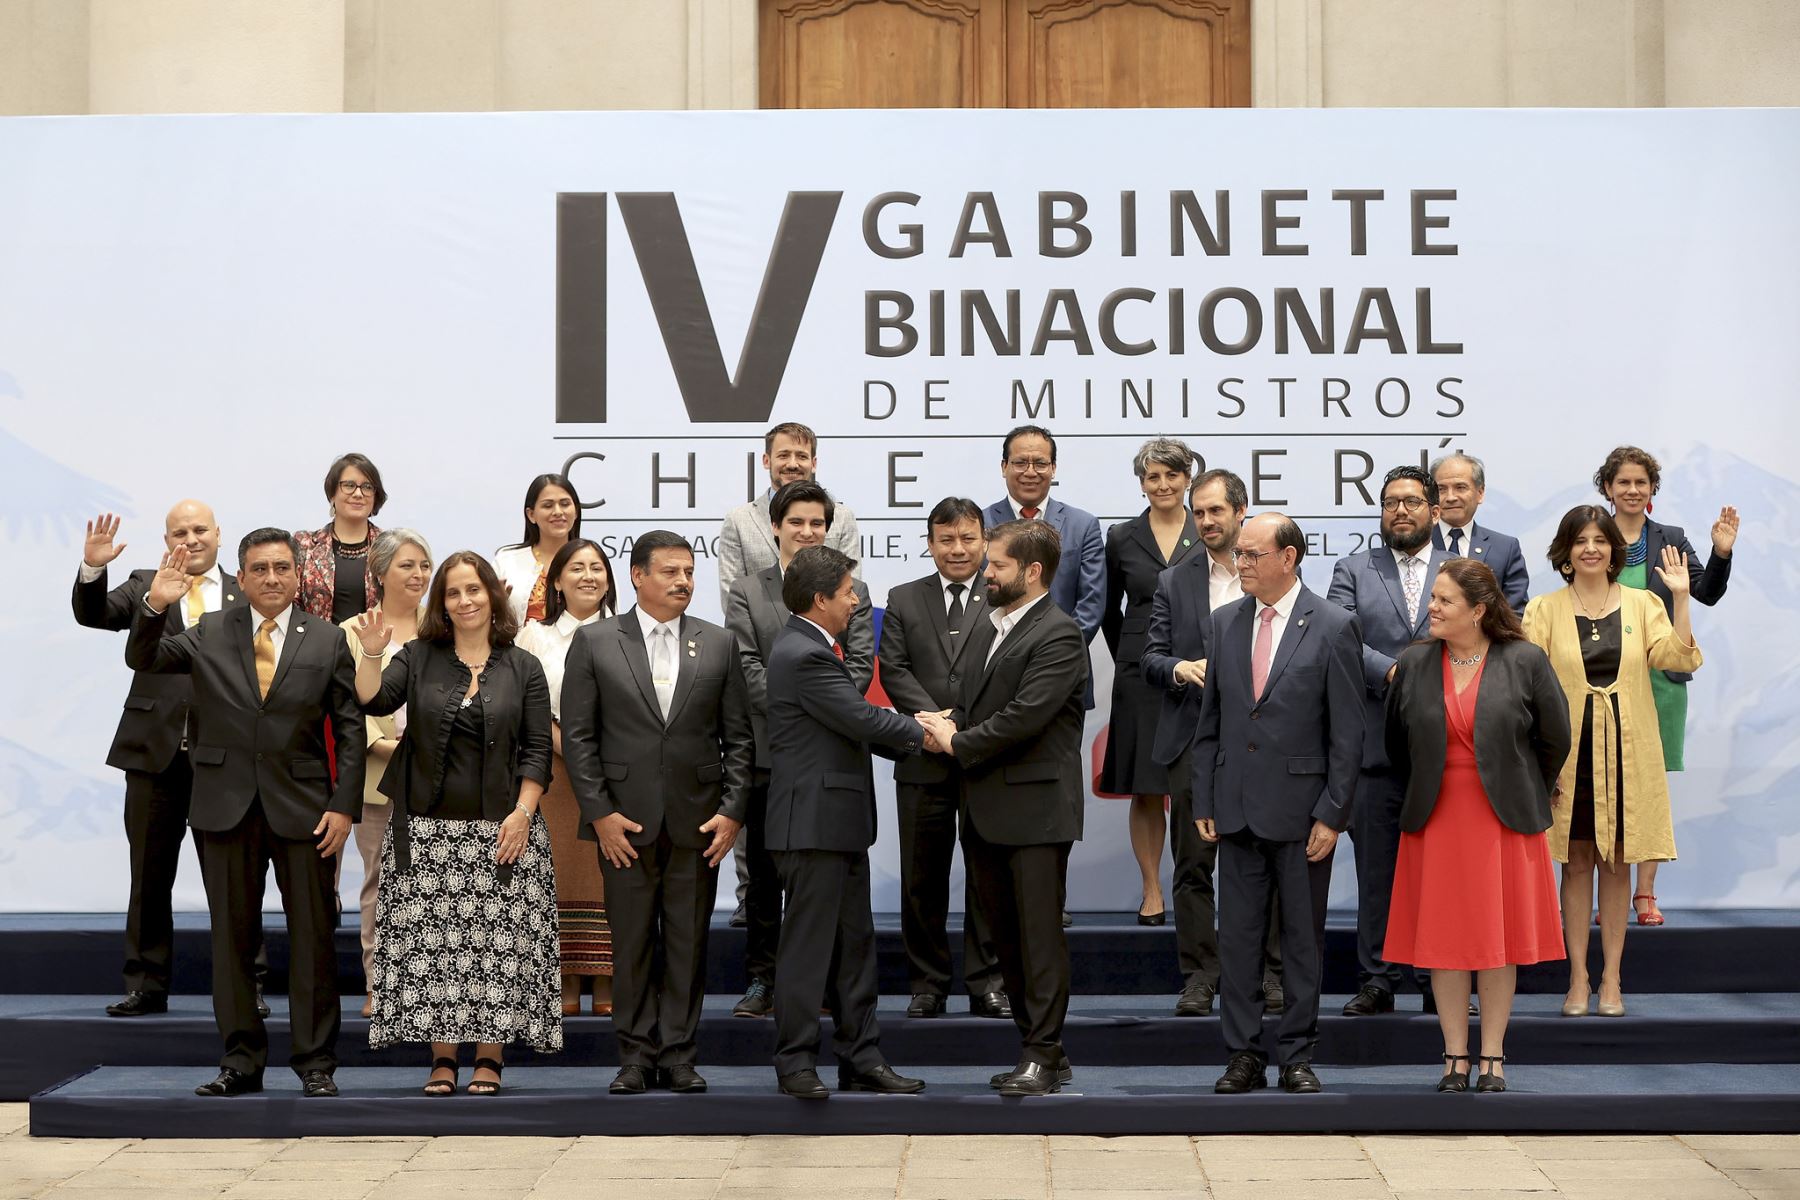 Presidentes Pedro Castillo y Gabriel Boric brindan declaración conjunta y participan fotografía oficial del Encuentro Presidencial y IV Gabinete Binacional Perú-Chile.

Foto:ANDINA/Presidencia